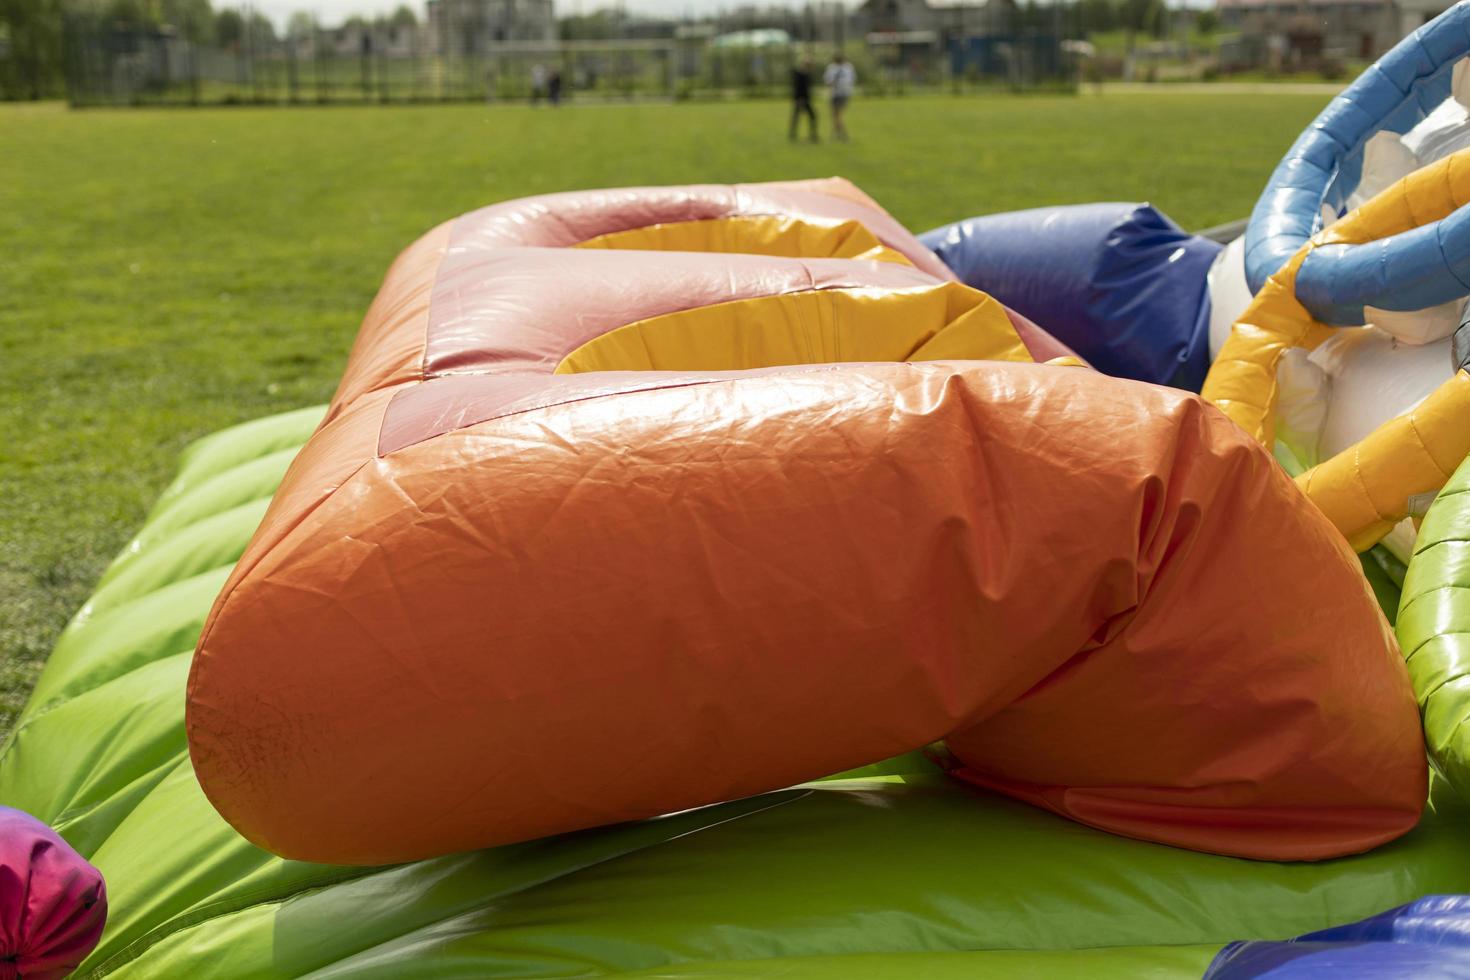 Trampolín inflable que se desinfla. reunión del parque de atracciones. Detalles del parque infantil. foto